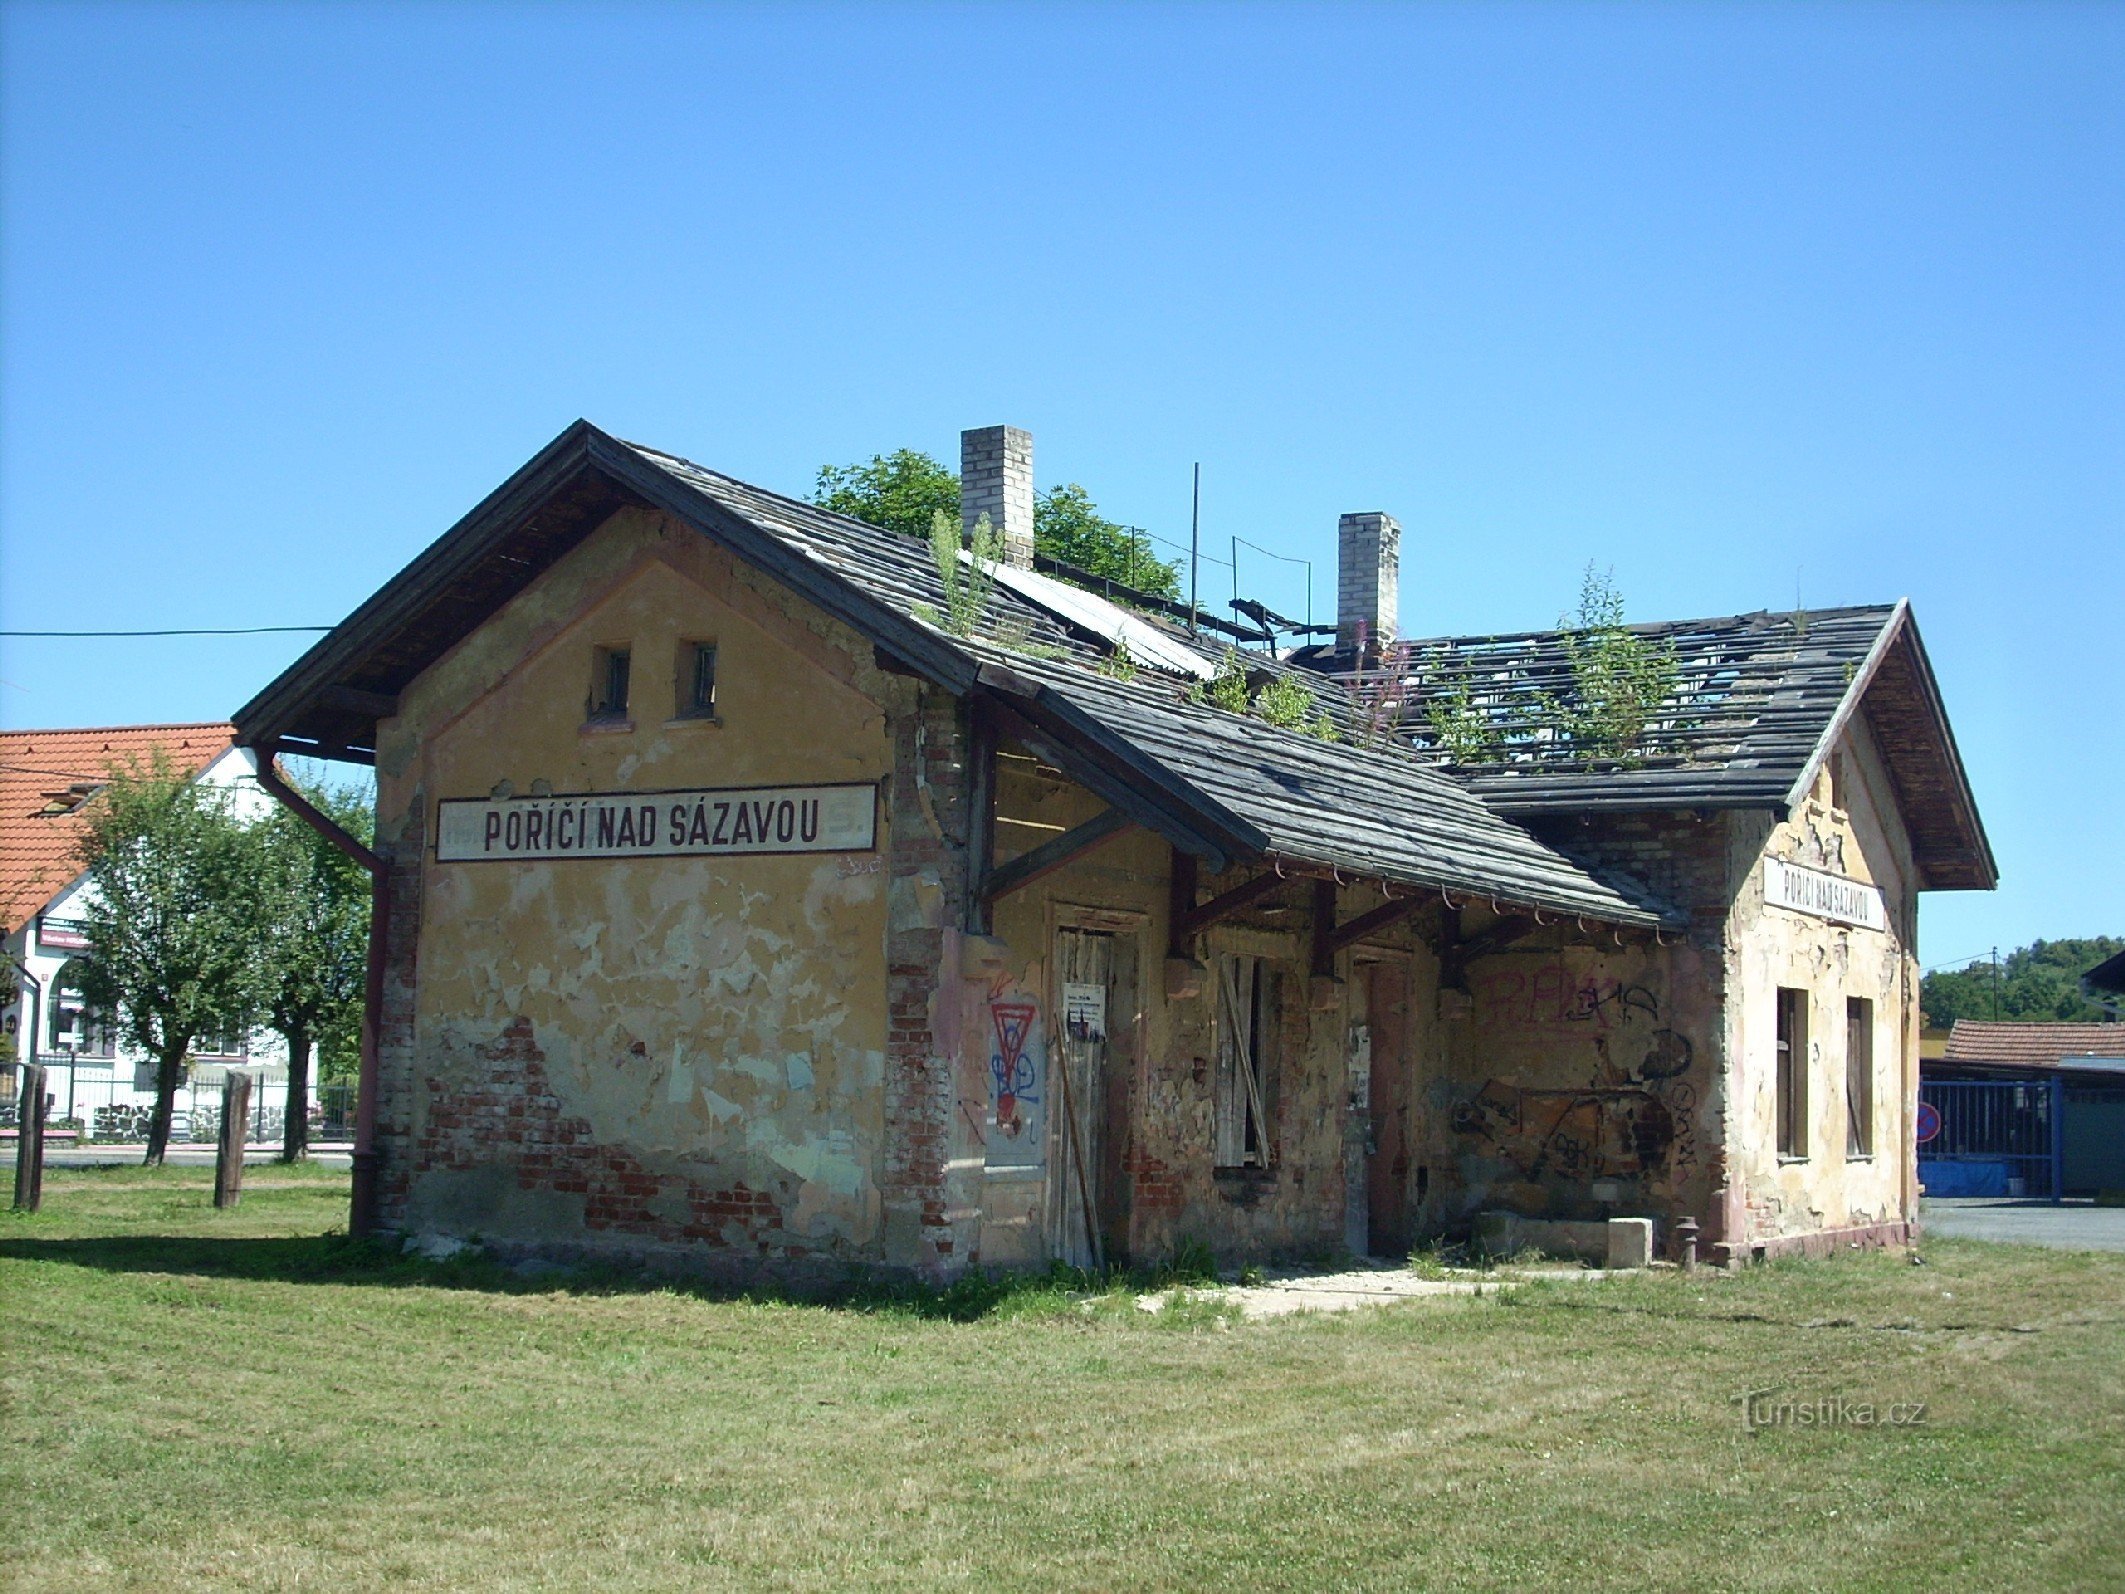 2. A estação ferroviária em Poříčí nad Sázavou - a foto mostra como a pequena estação ferroviária está desaparecendo gradualmente